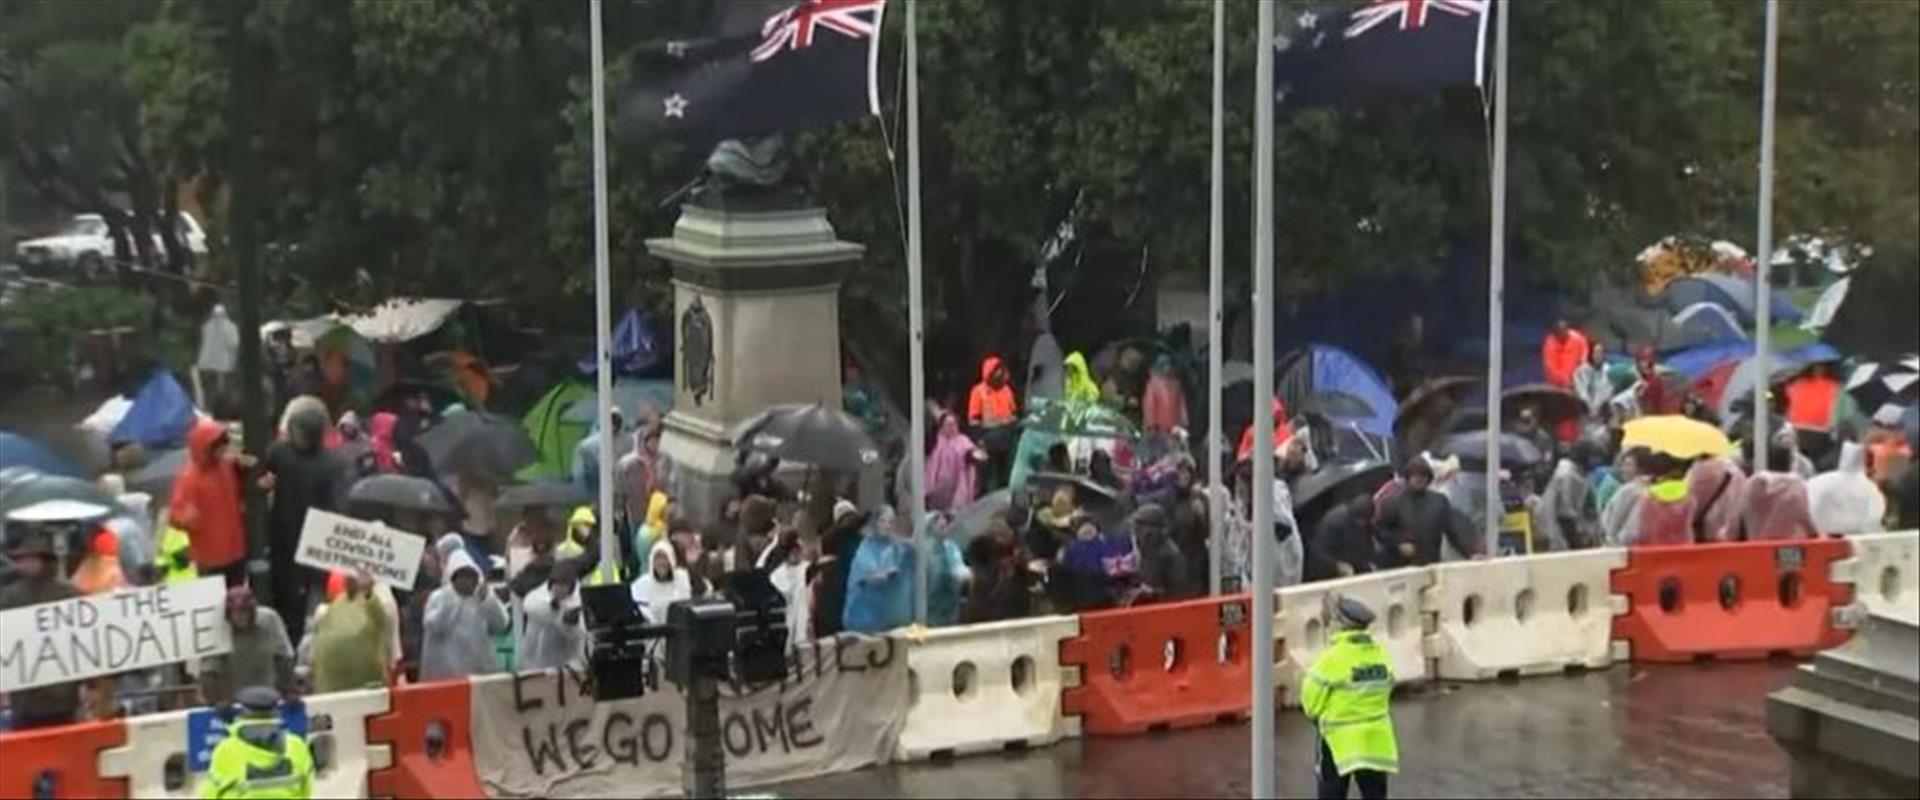 הפגנה בניו זילנד